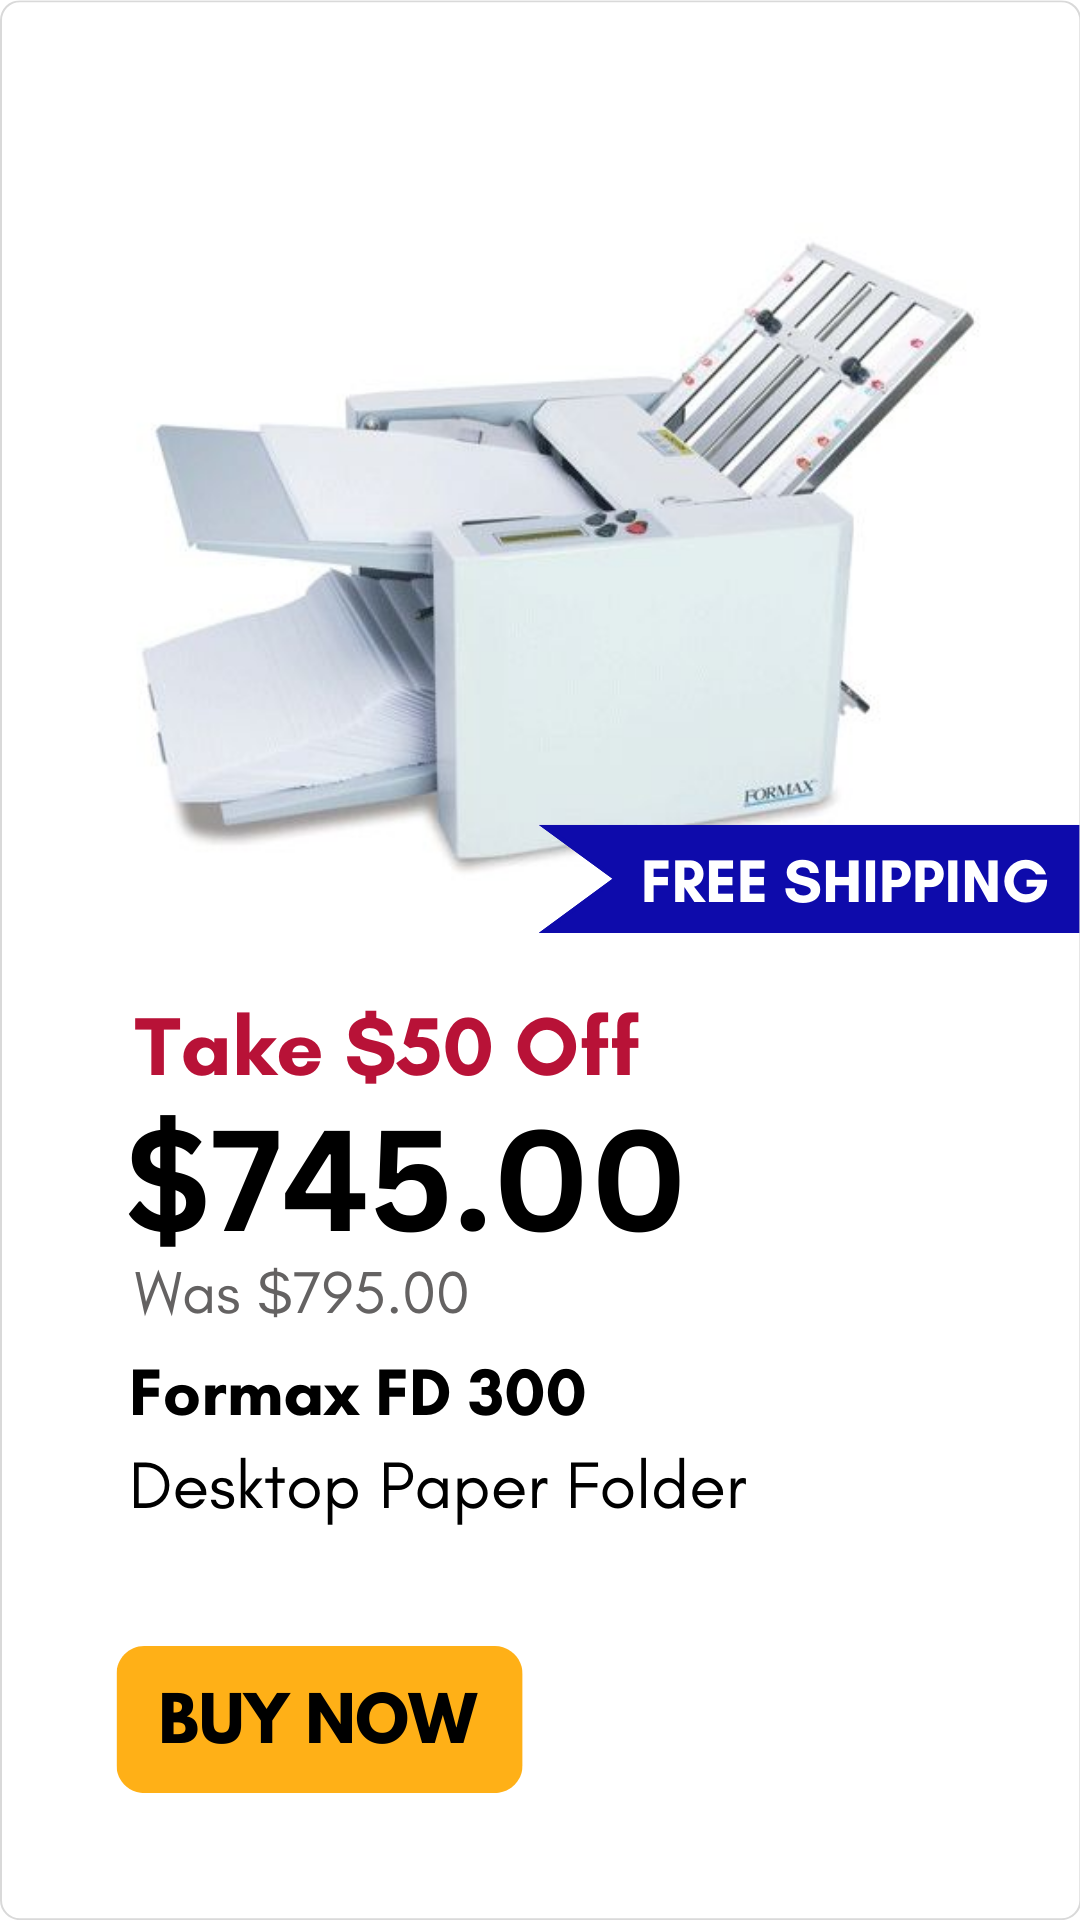 Formax FD 300 Desktop Paper Folder on sale for $50 off